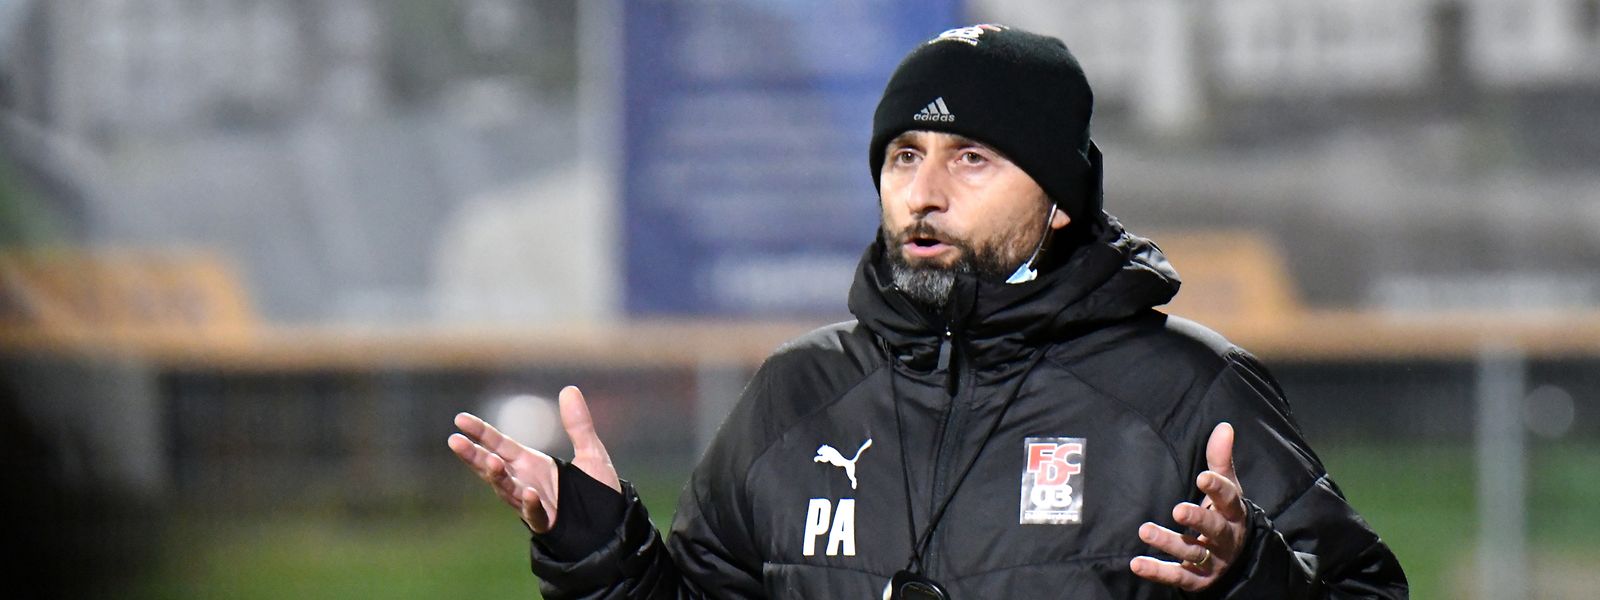 Paolo Amodio ist seit 2019 Trainer in Differdingen.